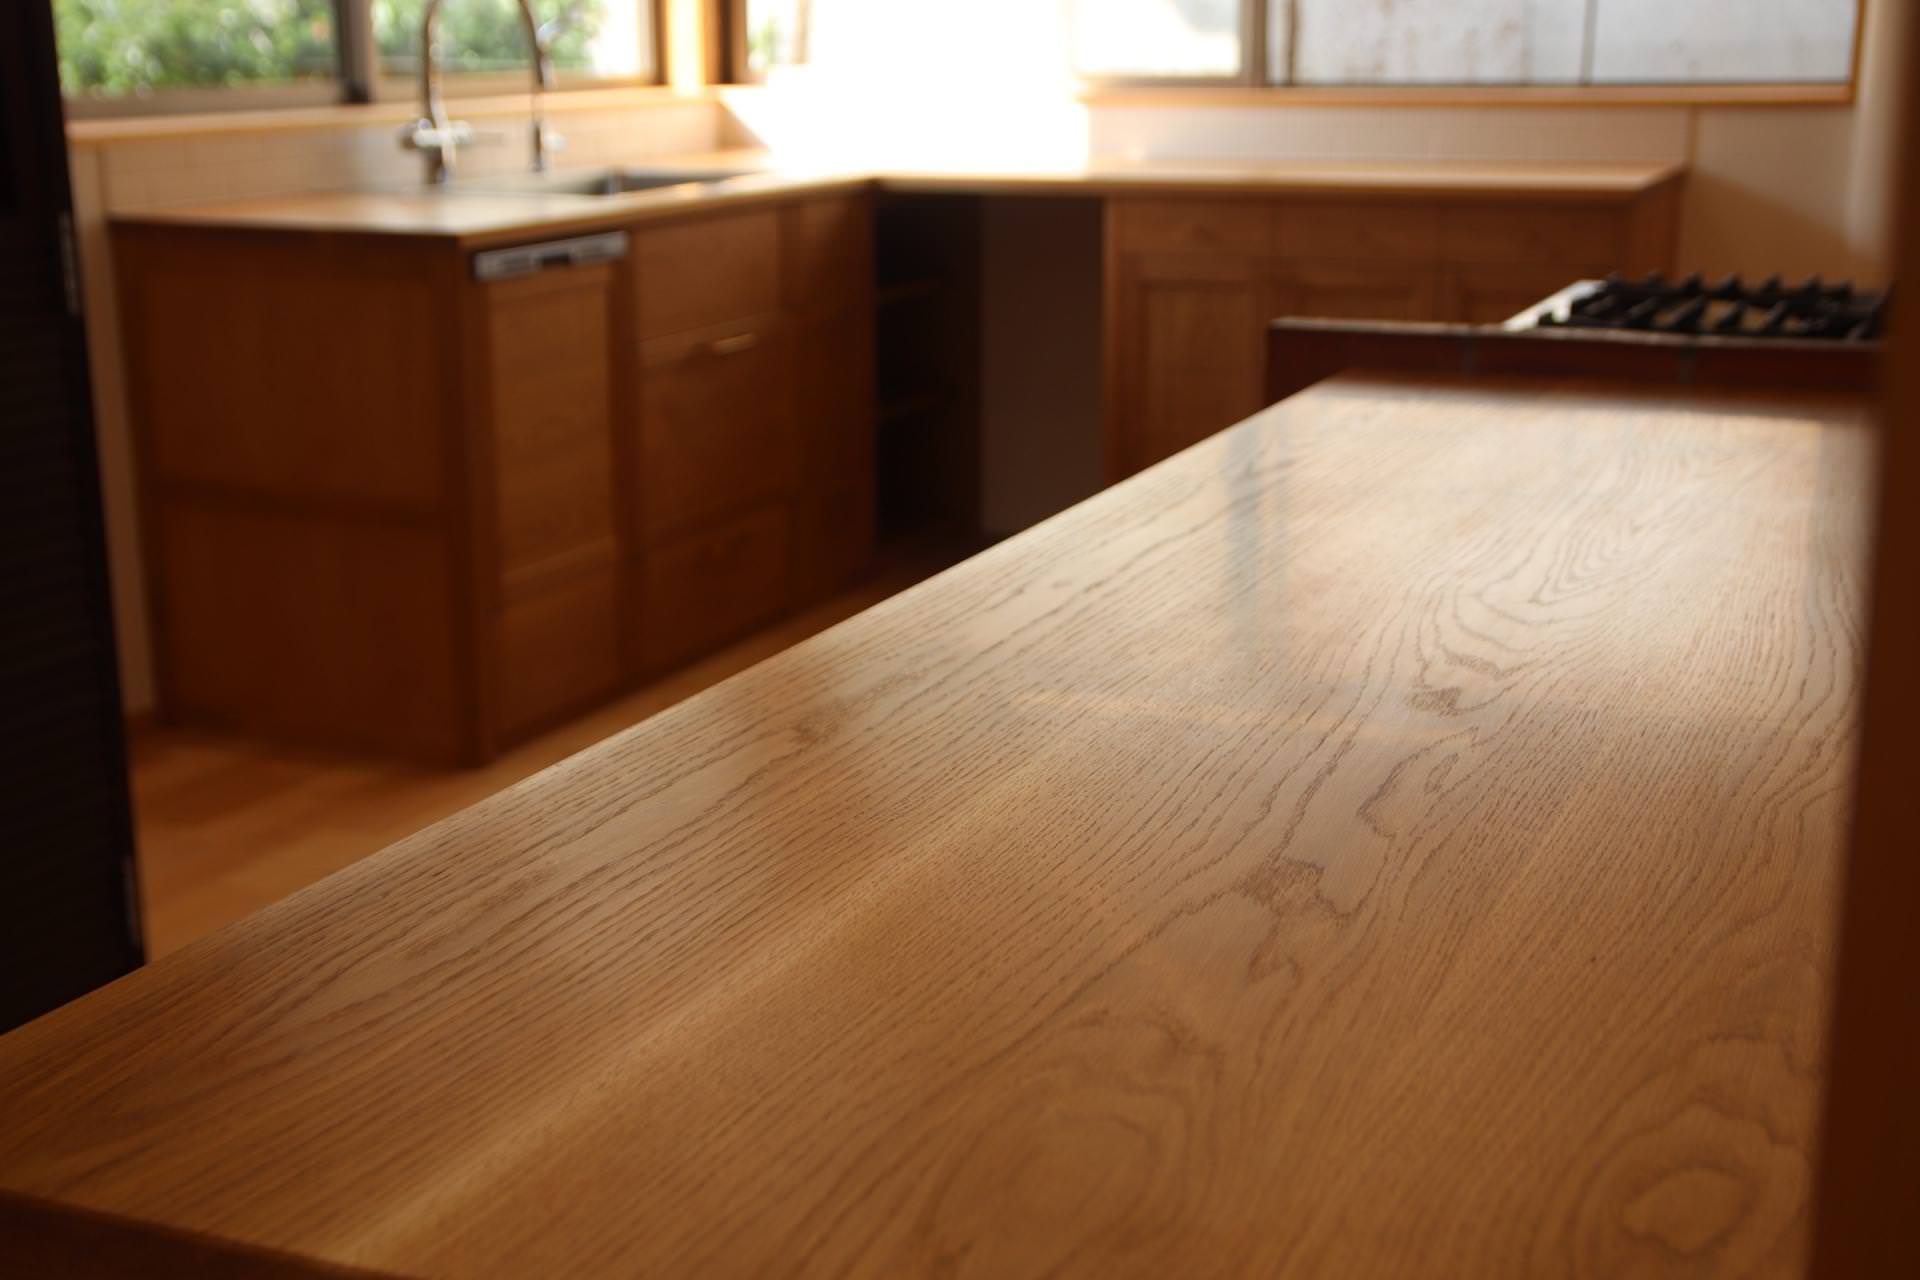 全国送料無料  国産 木製 オークの無垢板 キッチンカウンター キッチン収納